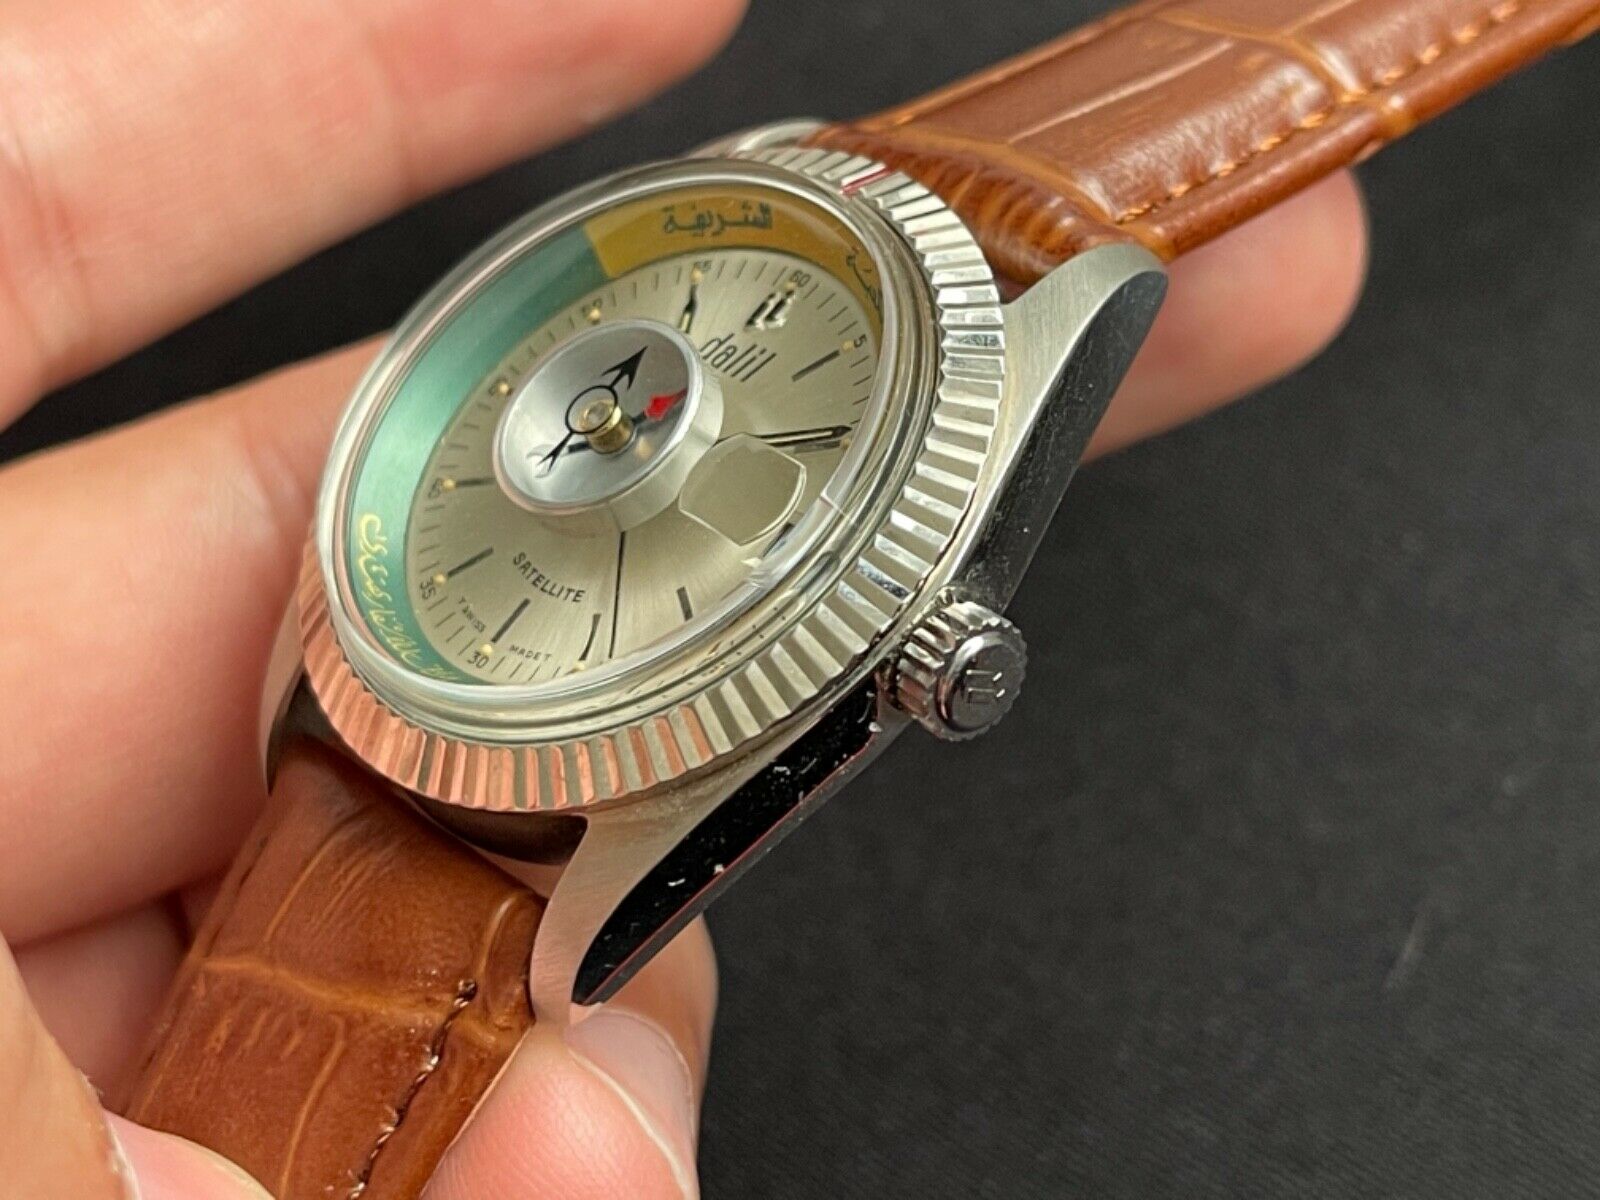 Vintage Dalil Select Monte Carlo Compass Watch No 1/1981/10 | eBay